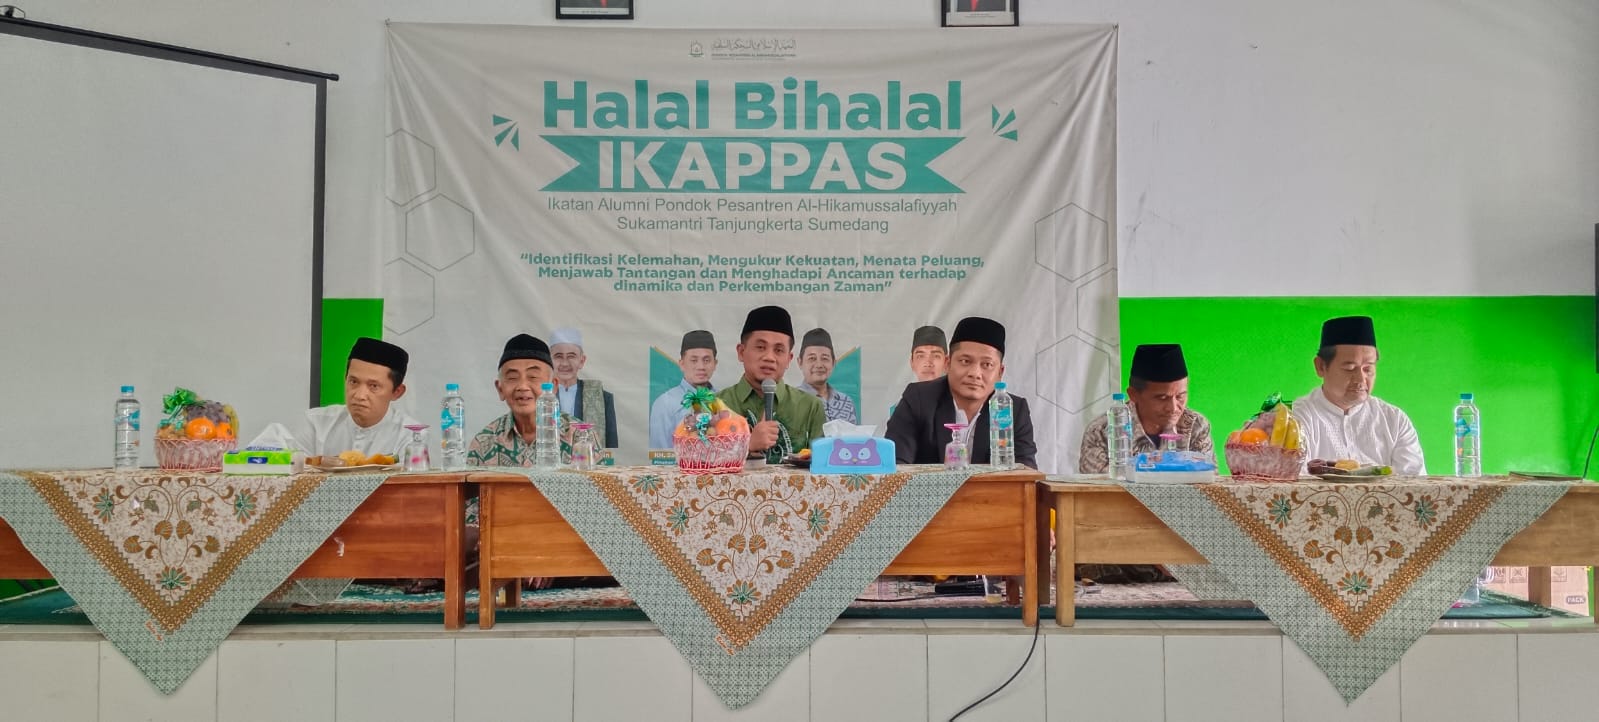 Ikatan Alumni Pondok Pondok Pesantren Al-hikamussalafiyyah (IKAPPAS) menggelar halal bi halal akbar